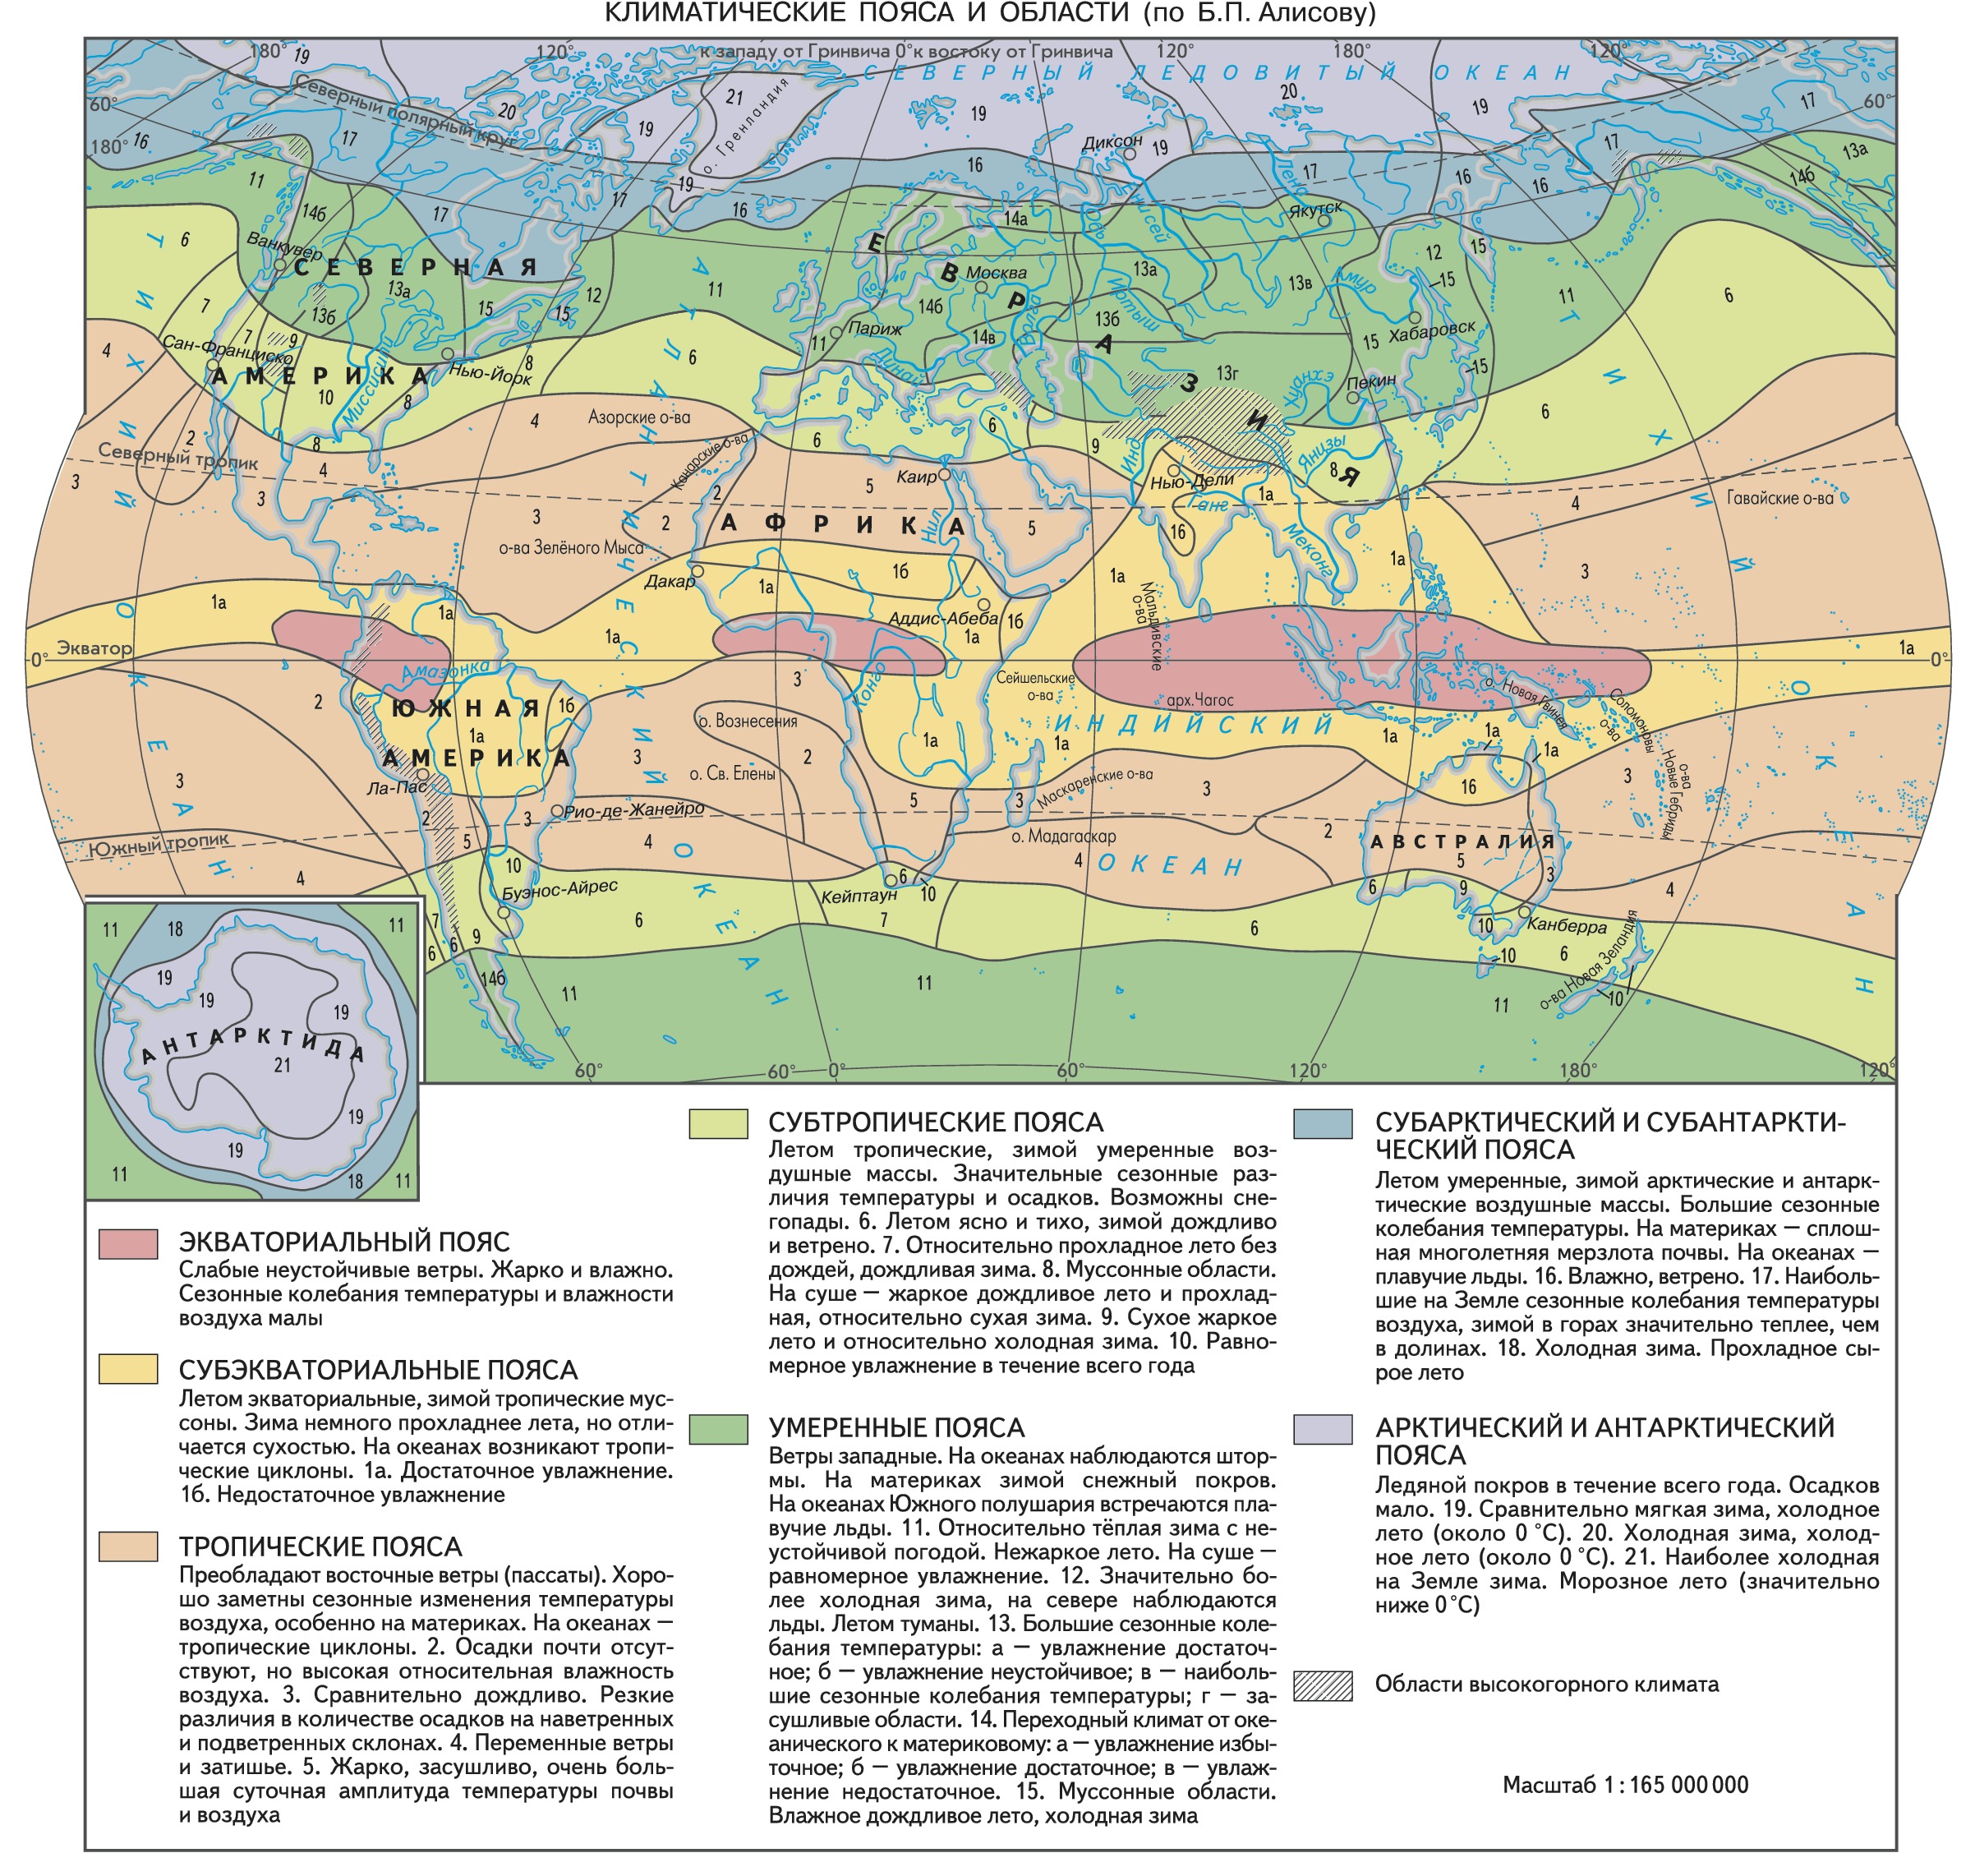 Сравнив карты физическую климатических поясов и областей